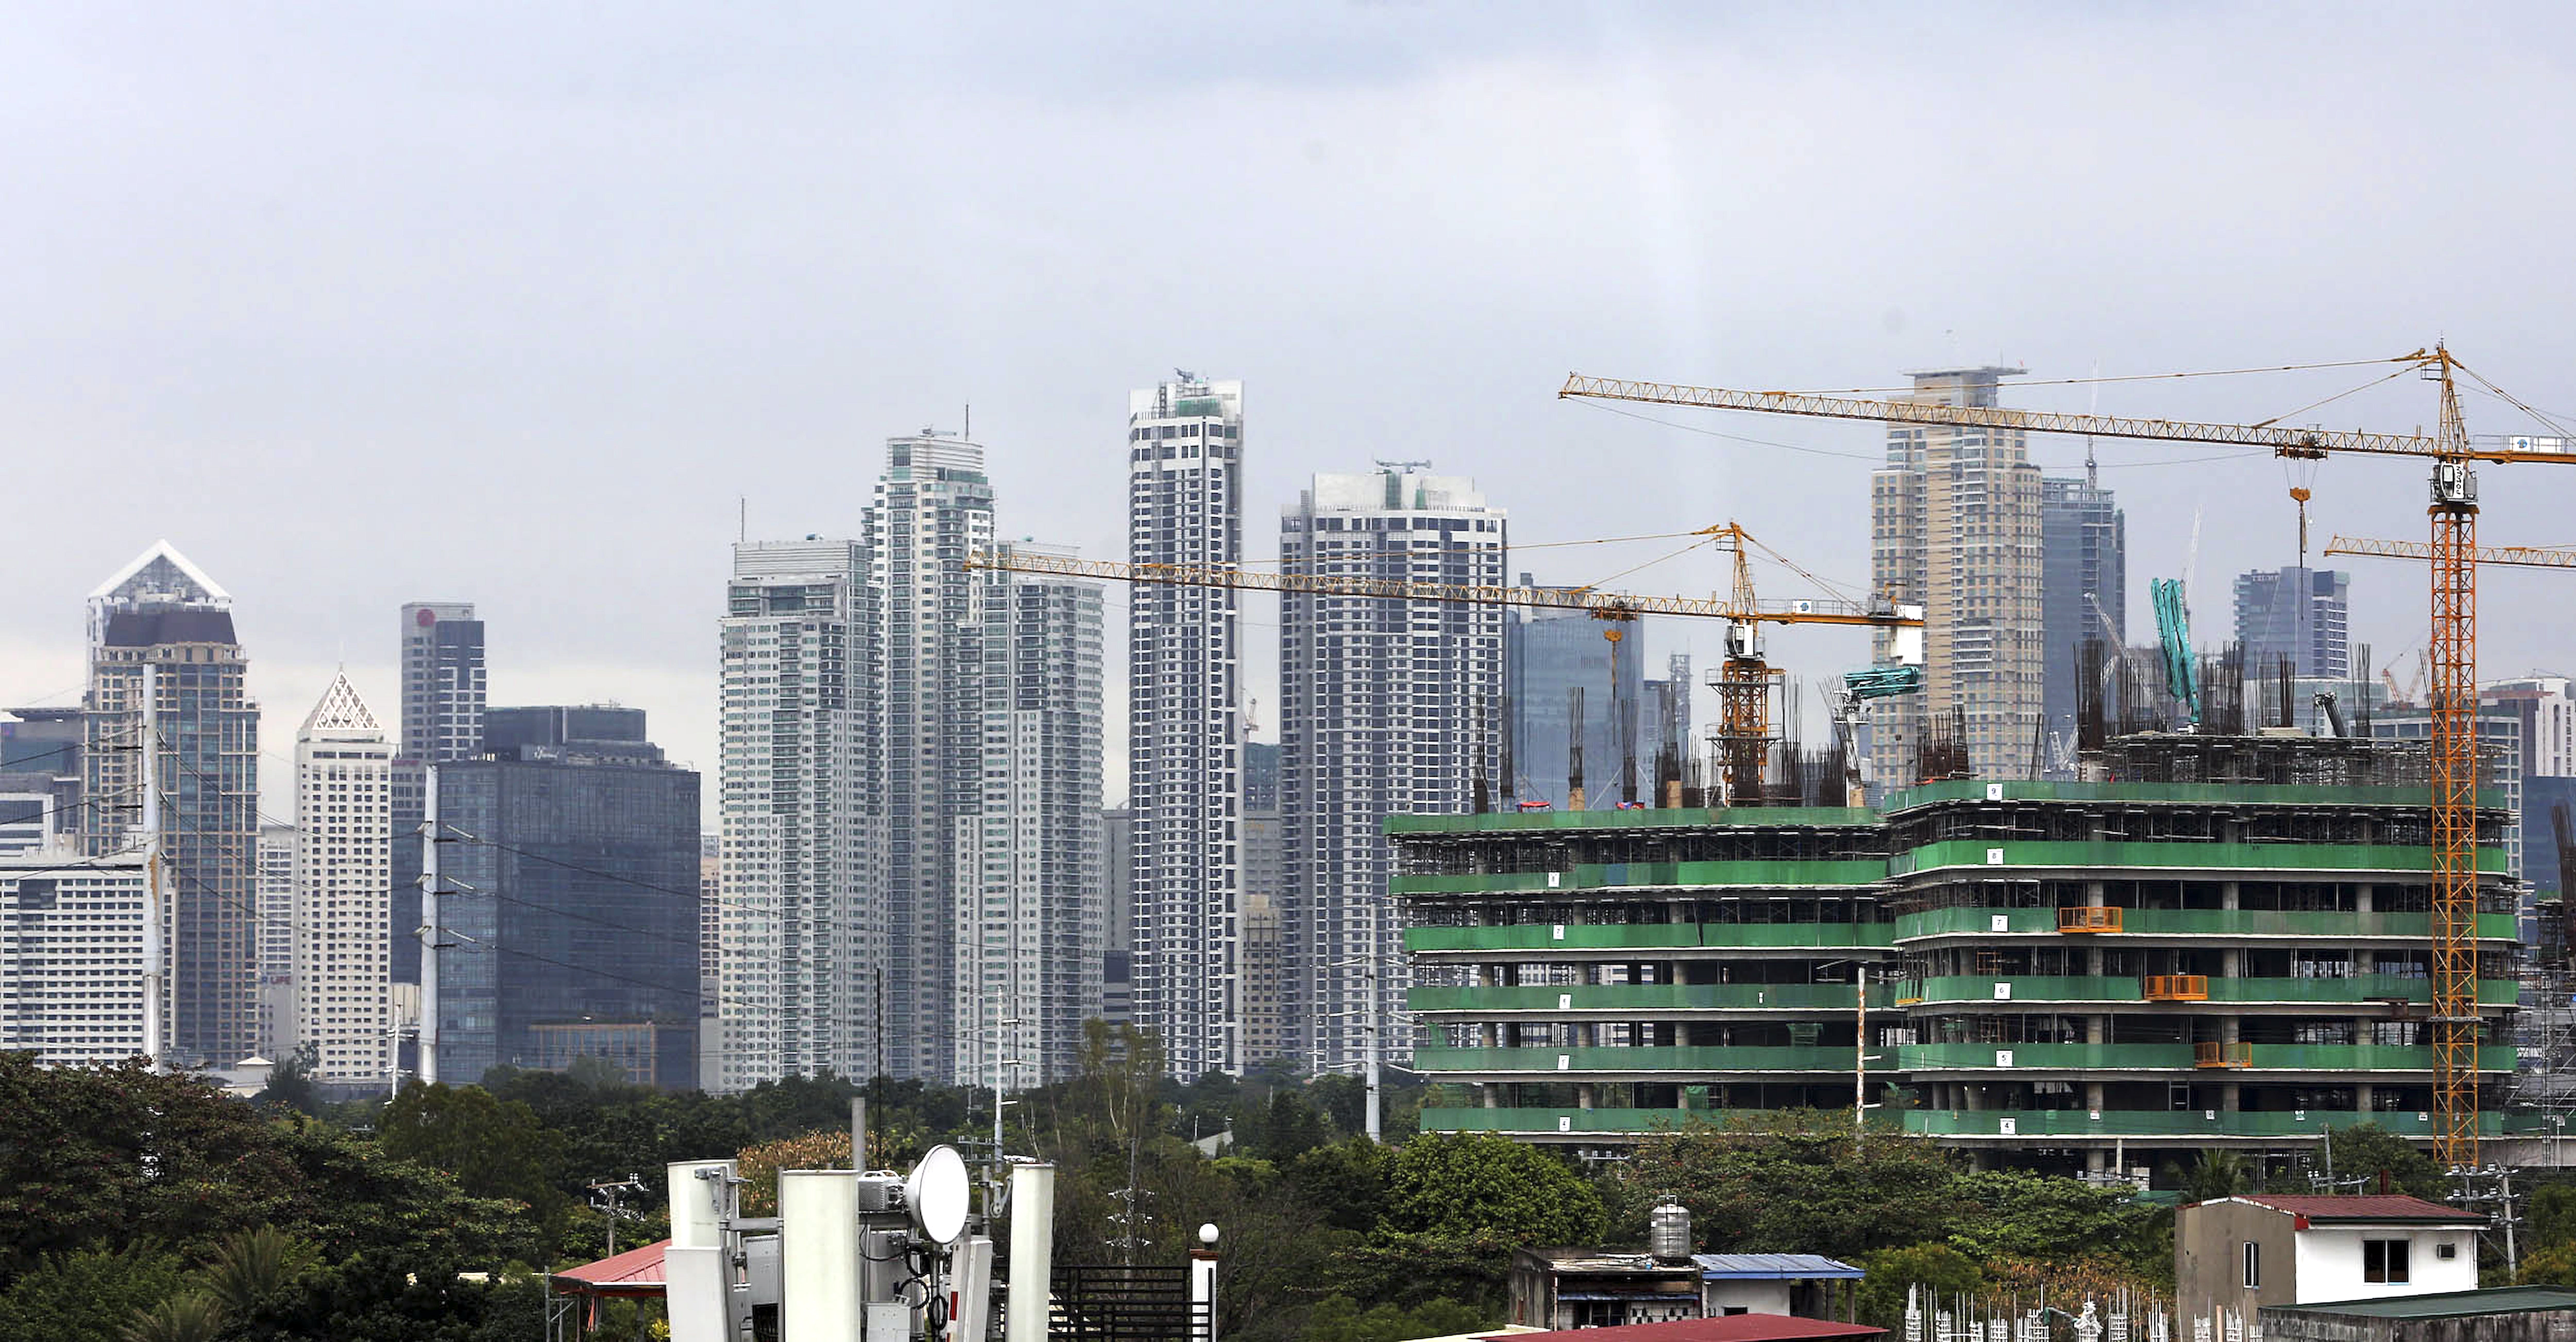 Philippine economy grew 5.7% in Q1